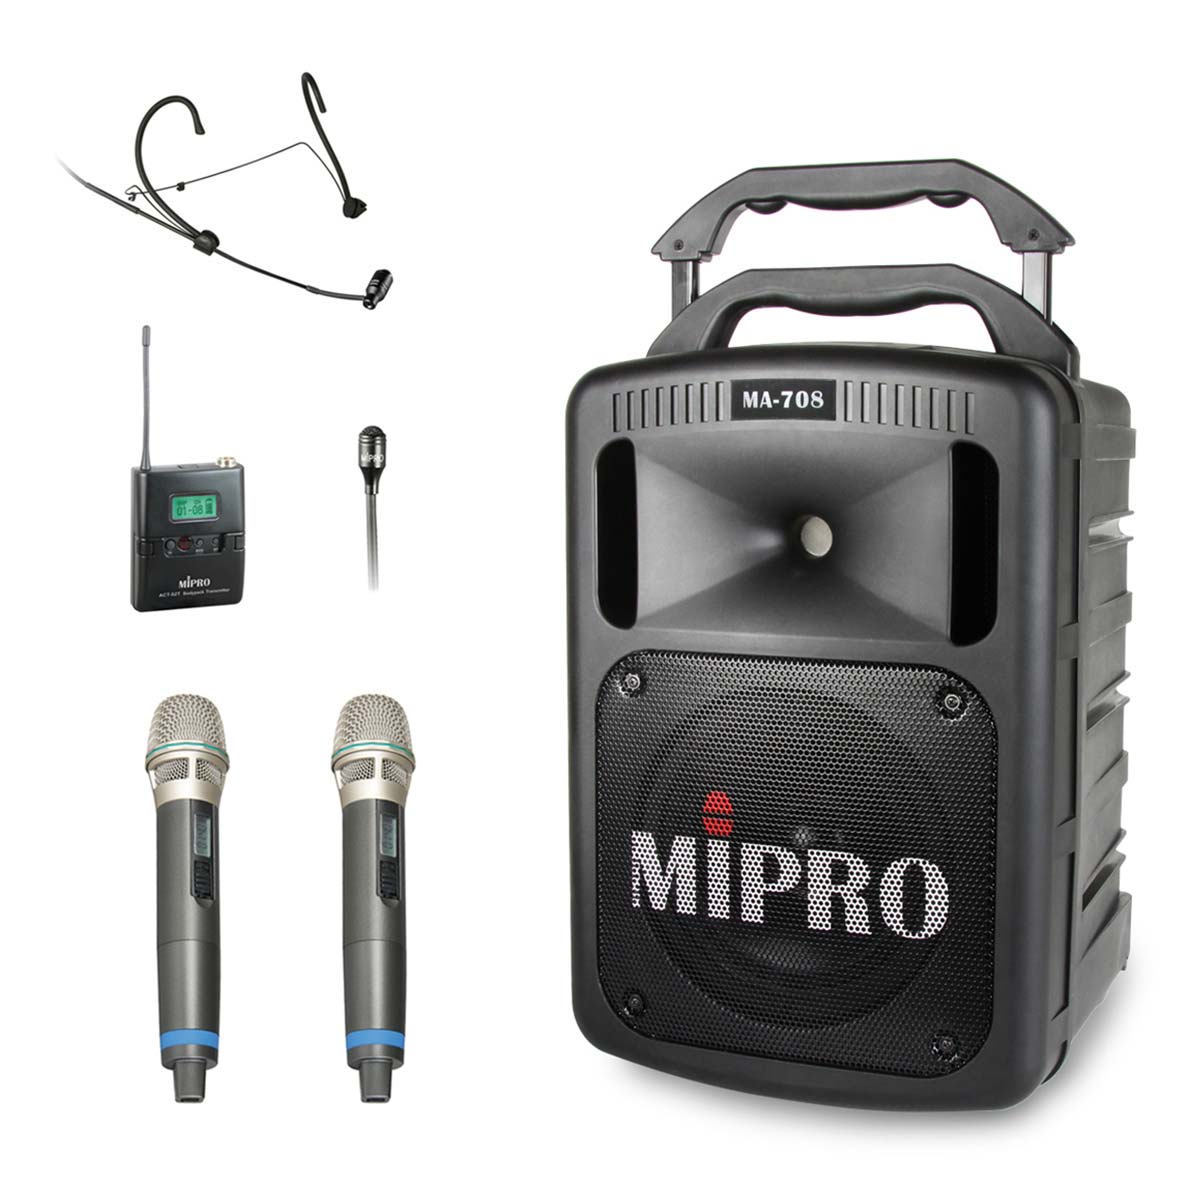 MIPRO 豪華型手提式無線擴音機 全配超值組 MA-708